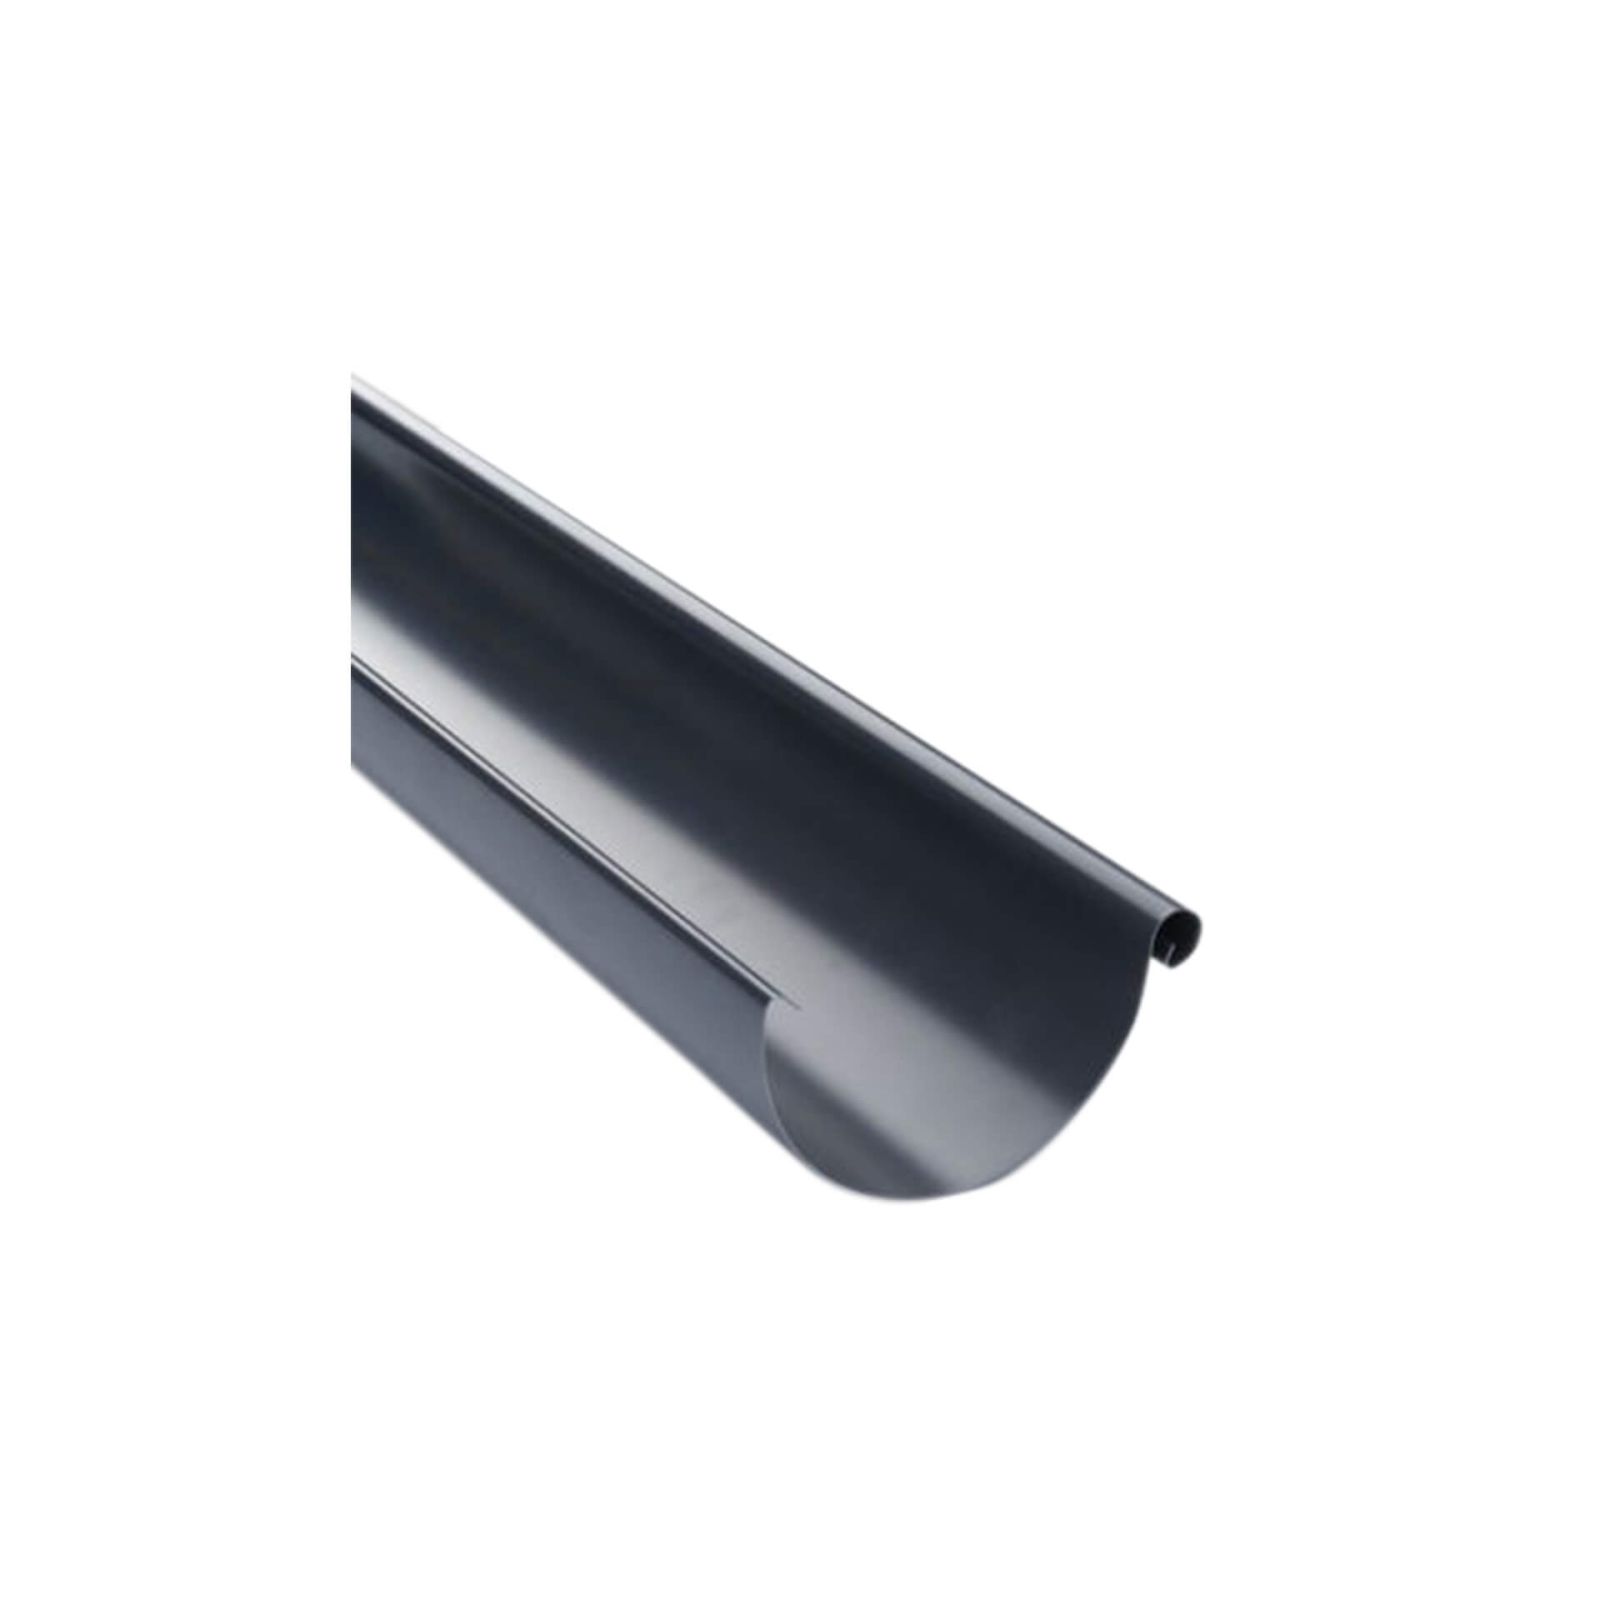 Zoom Modal | Stahl Dachrinnen Sparpaket 8 m | Ø 125/100 mm | Farbe Graphit | 0